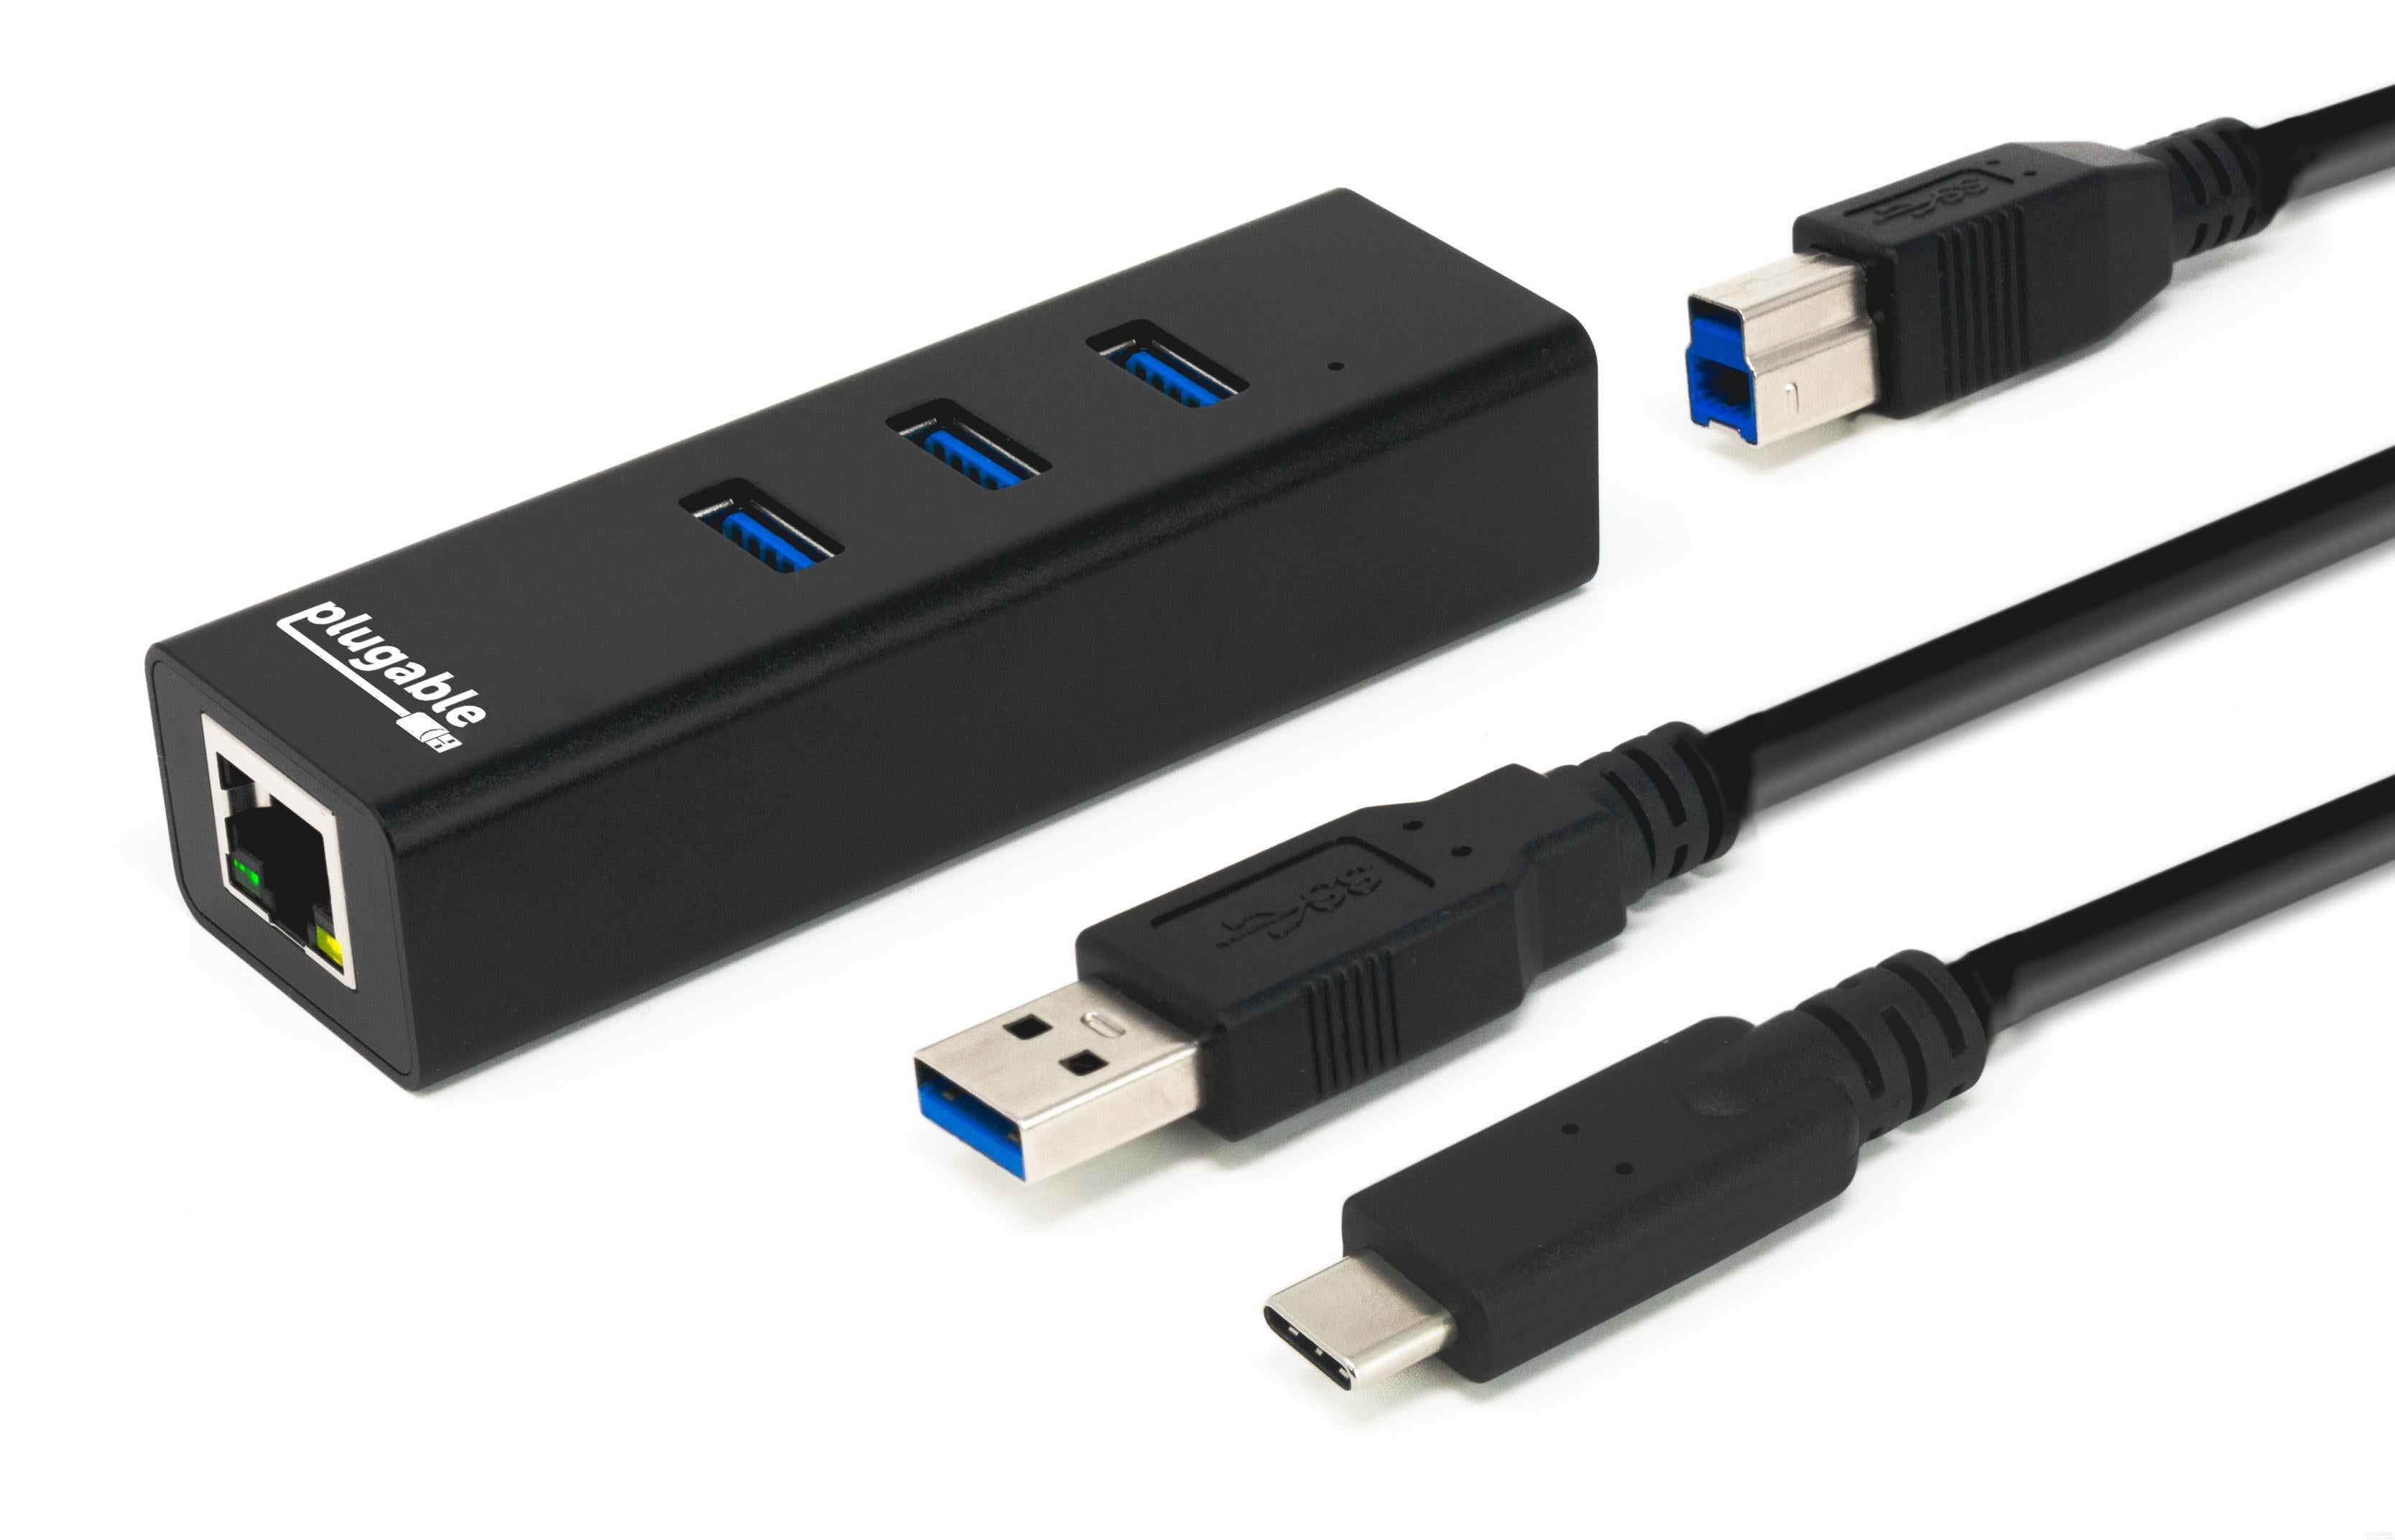 Plugable USB 3.0 バスパワー 3 ポートハブ、ギガビットイーサネット付